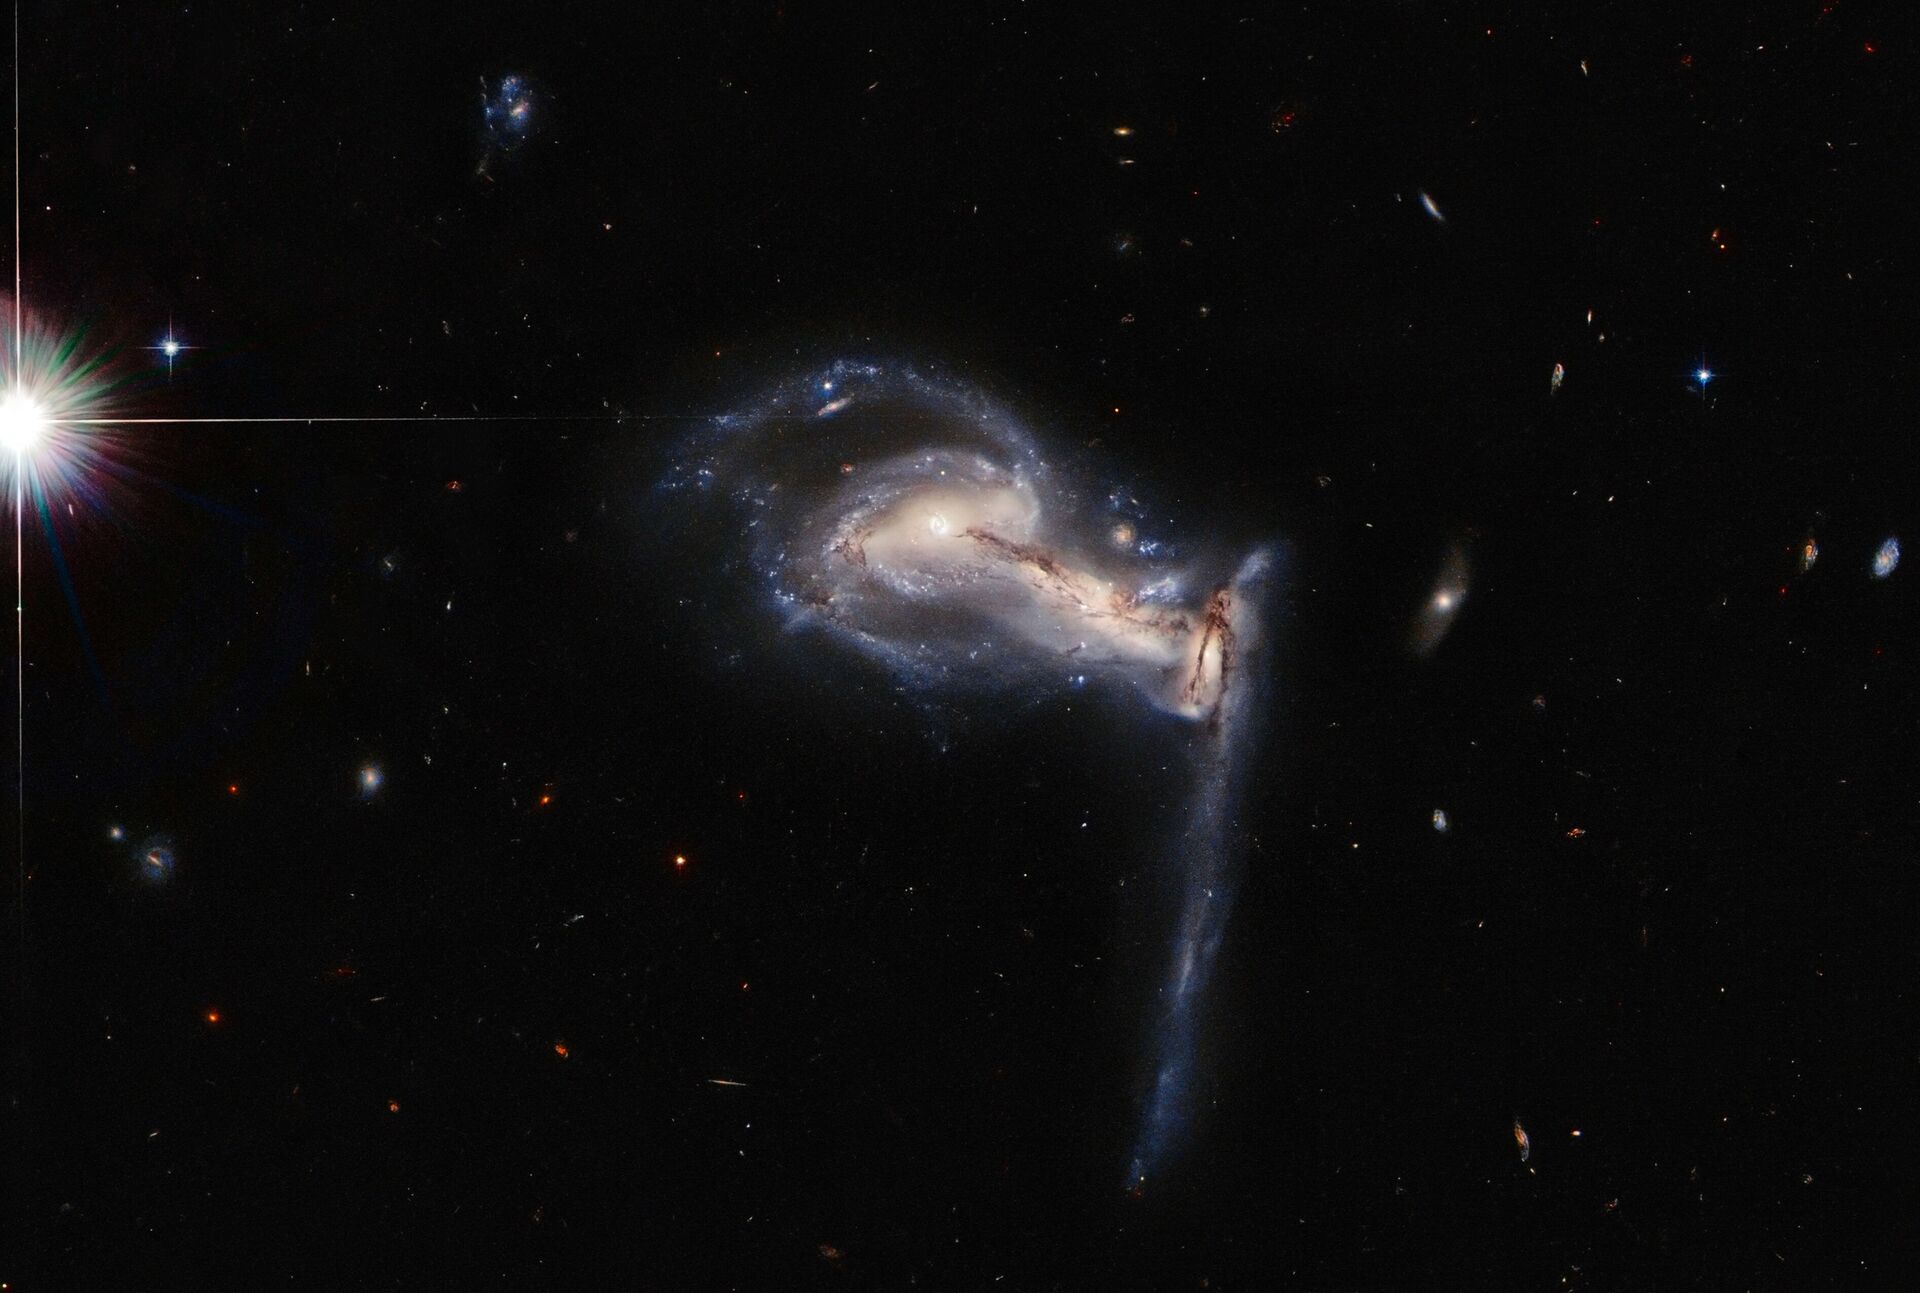 Telescópio Hubble capta FOTO de 'briga entre irmãos galácticos' a 763 milhões de anos-luz - Sputnik Brasil, 1920, 27.07.2021